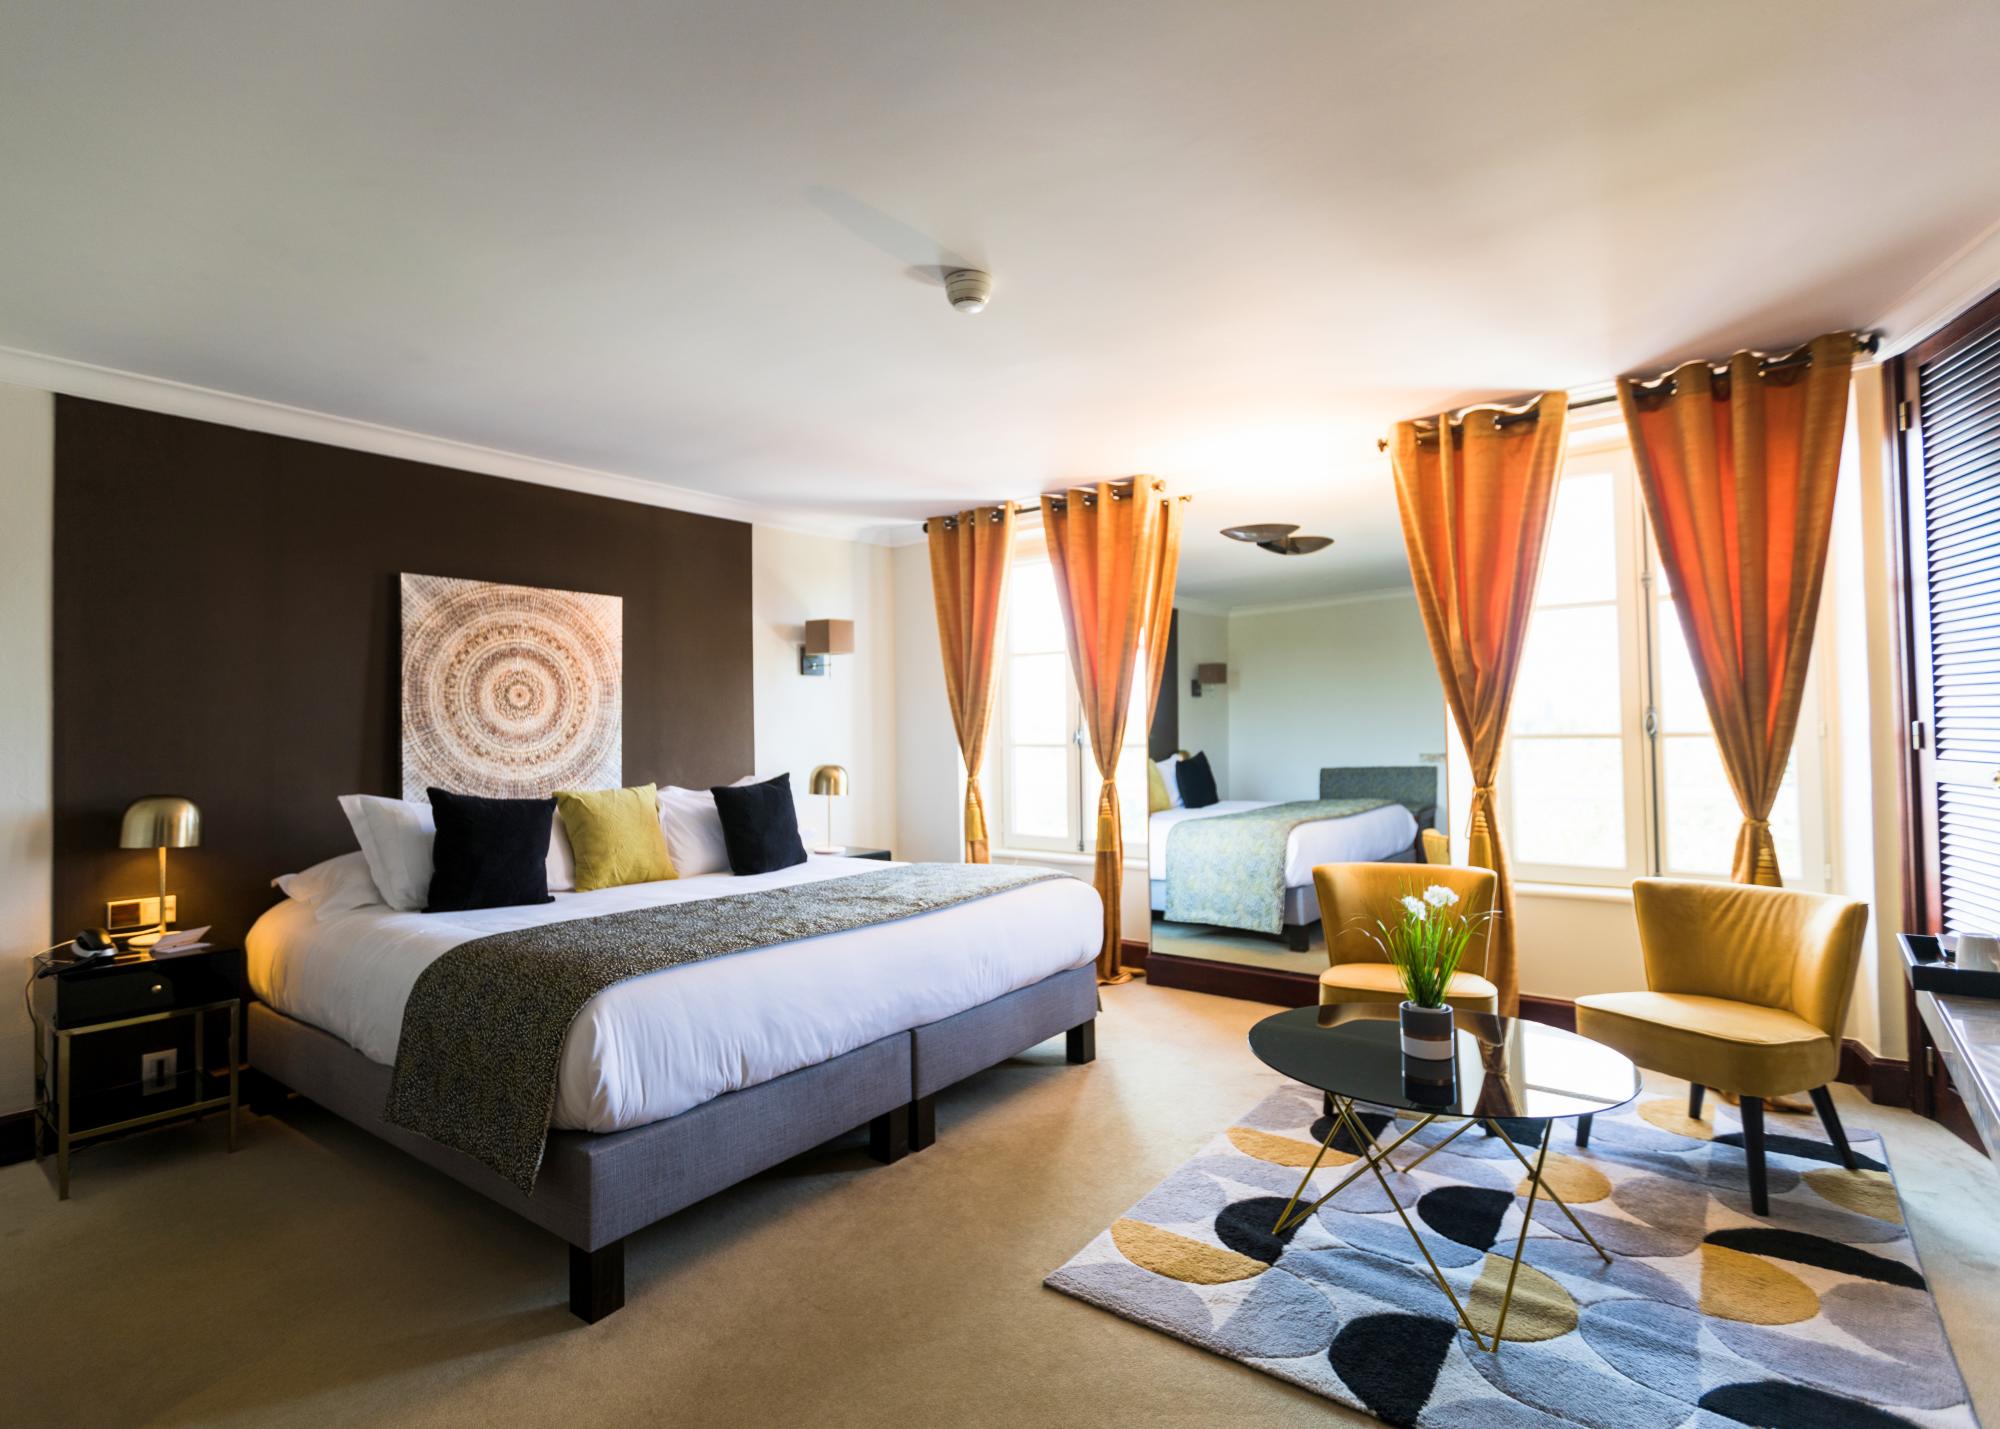 Chambres spacieuses et cosy de l'hôtel 5 étoiles proche de Paris pour des séjours en amoureux